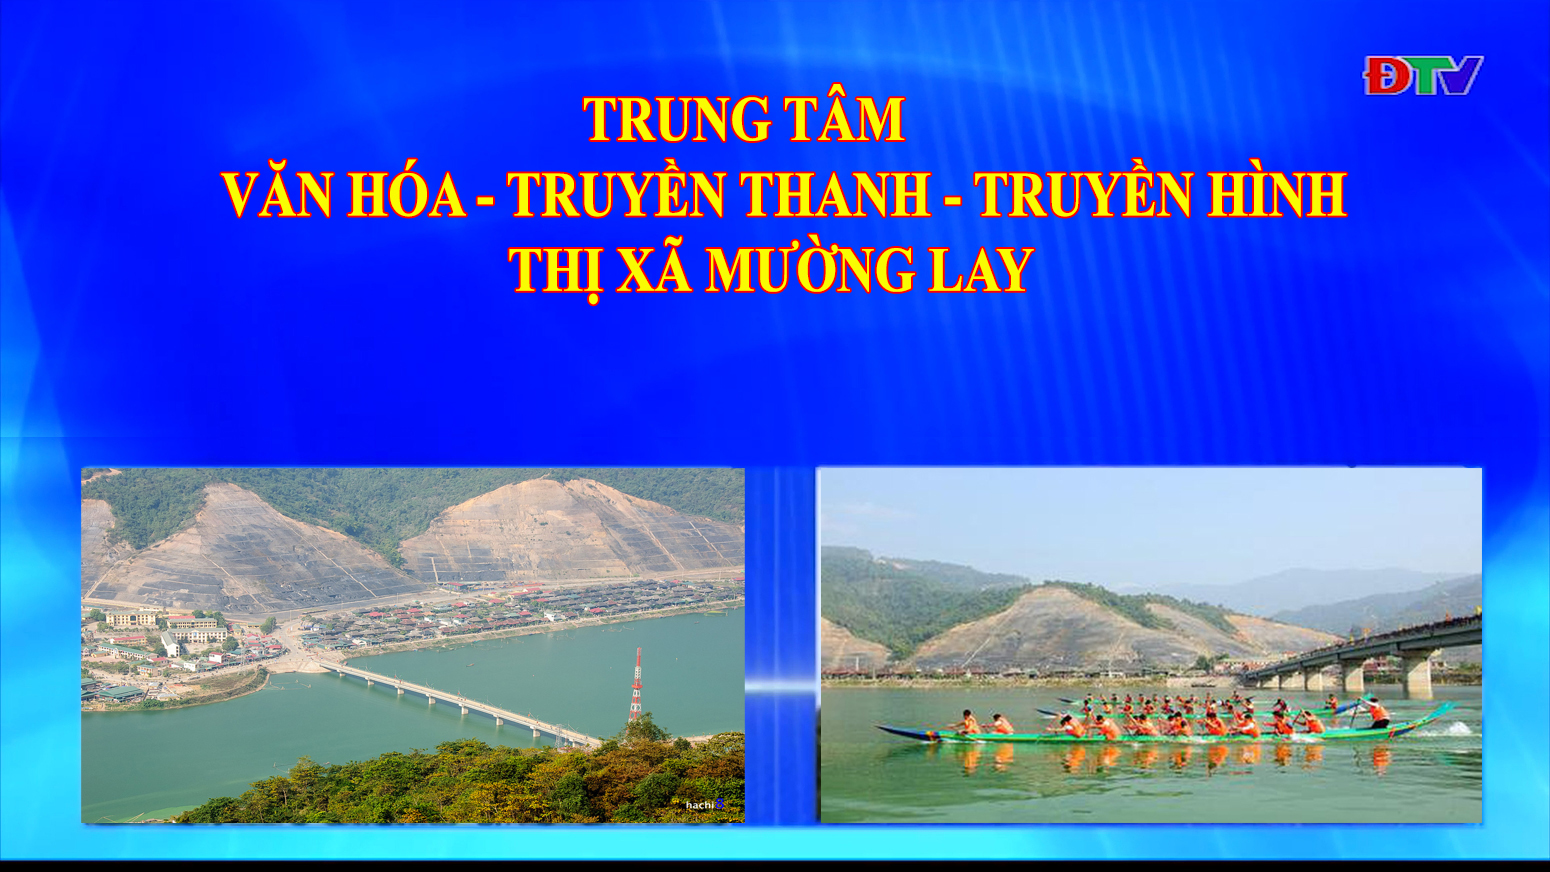 Trung tâm VH-TTTH thị xã Mường Lay (Ngày 16-10-2020)